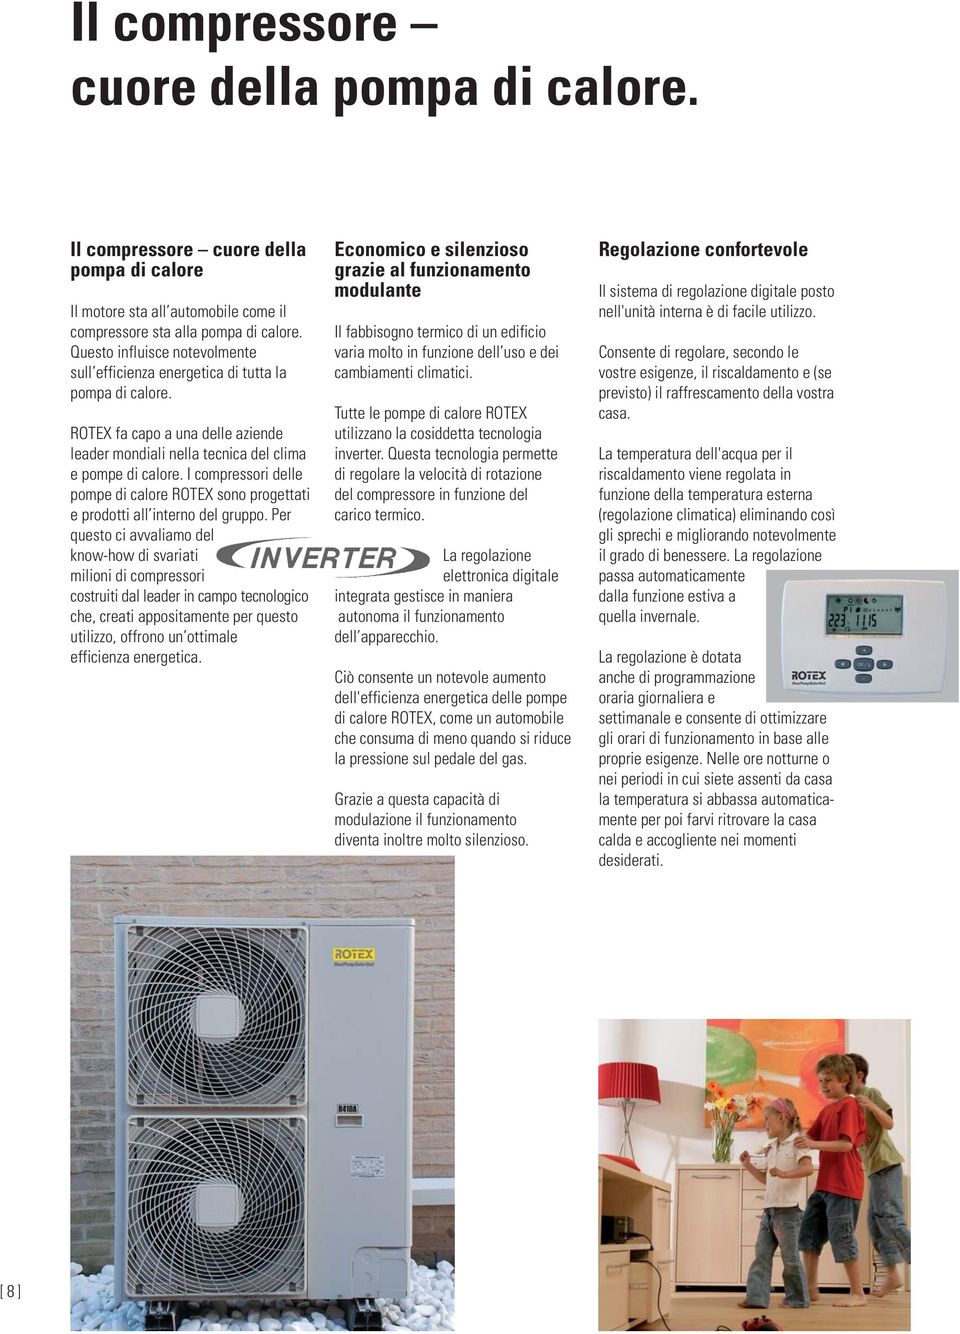 I compressori delle pompe di calore ROTEX sono progettati e prodotti all interno del gruppo.